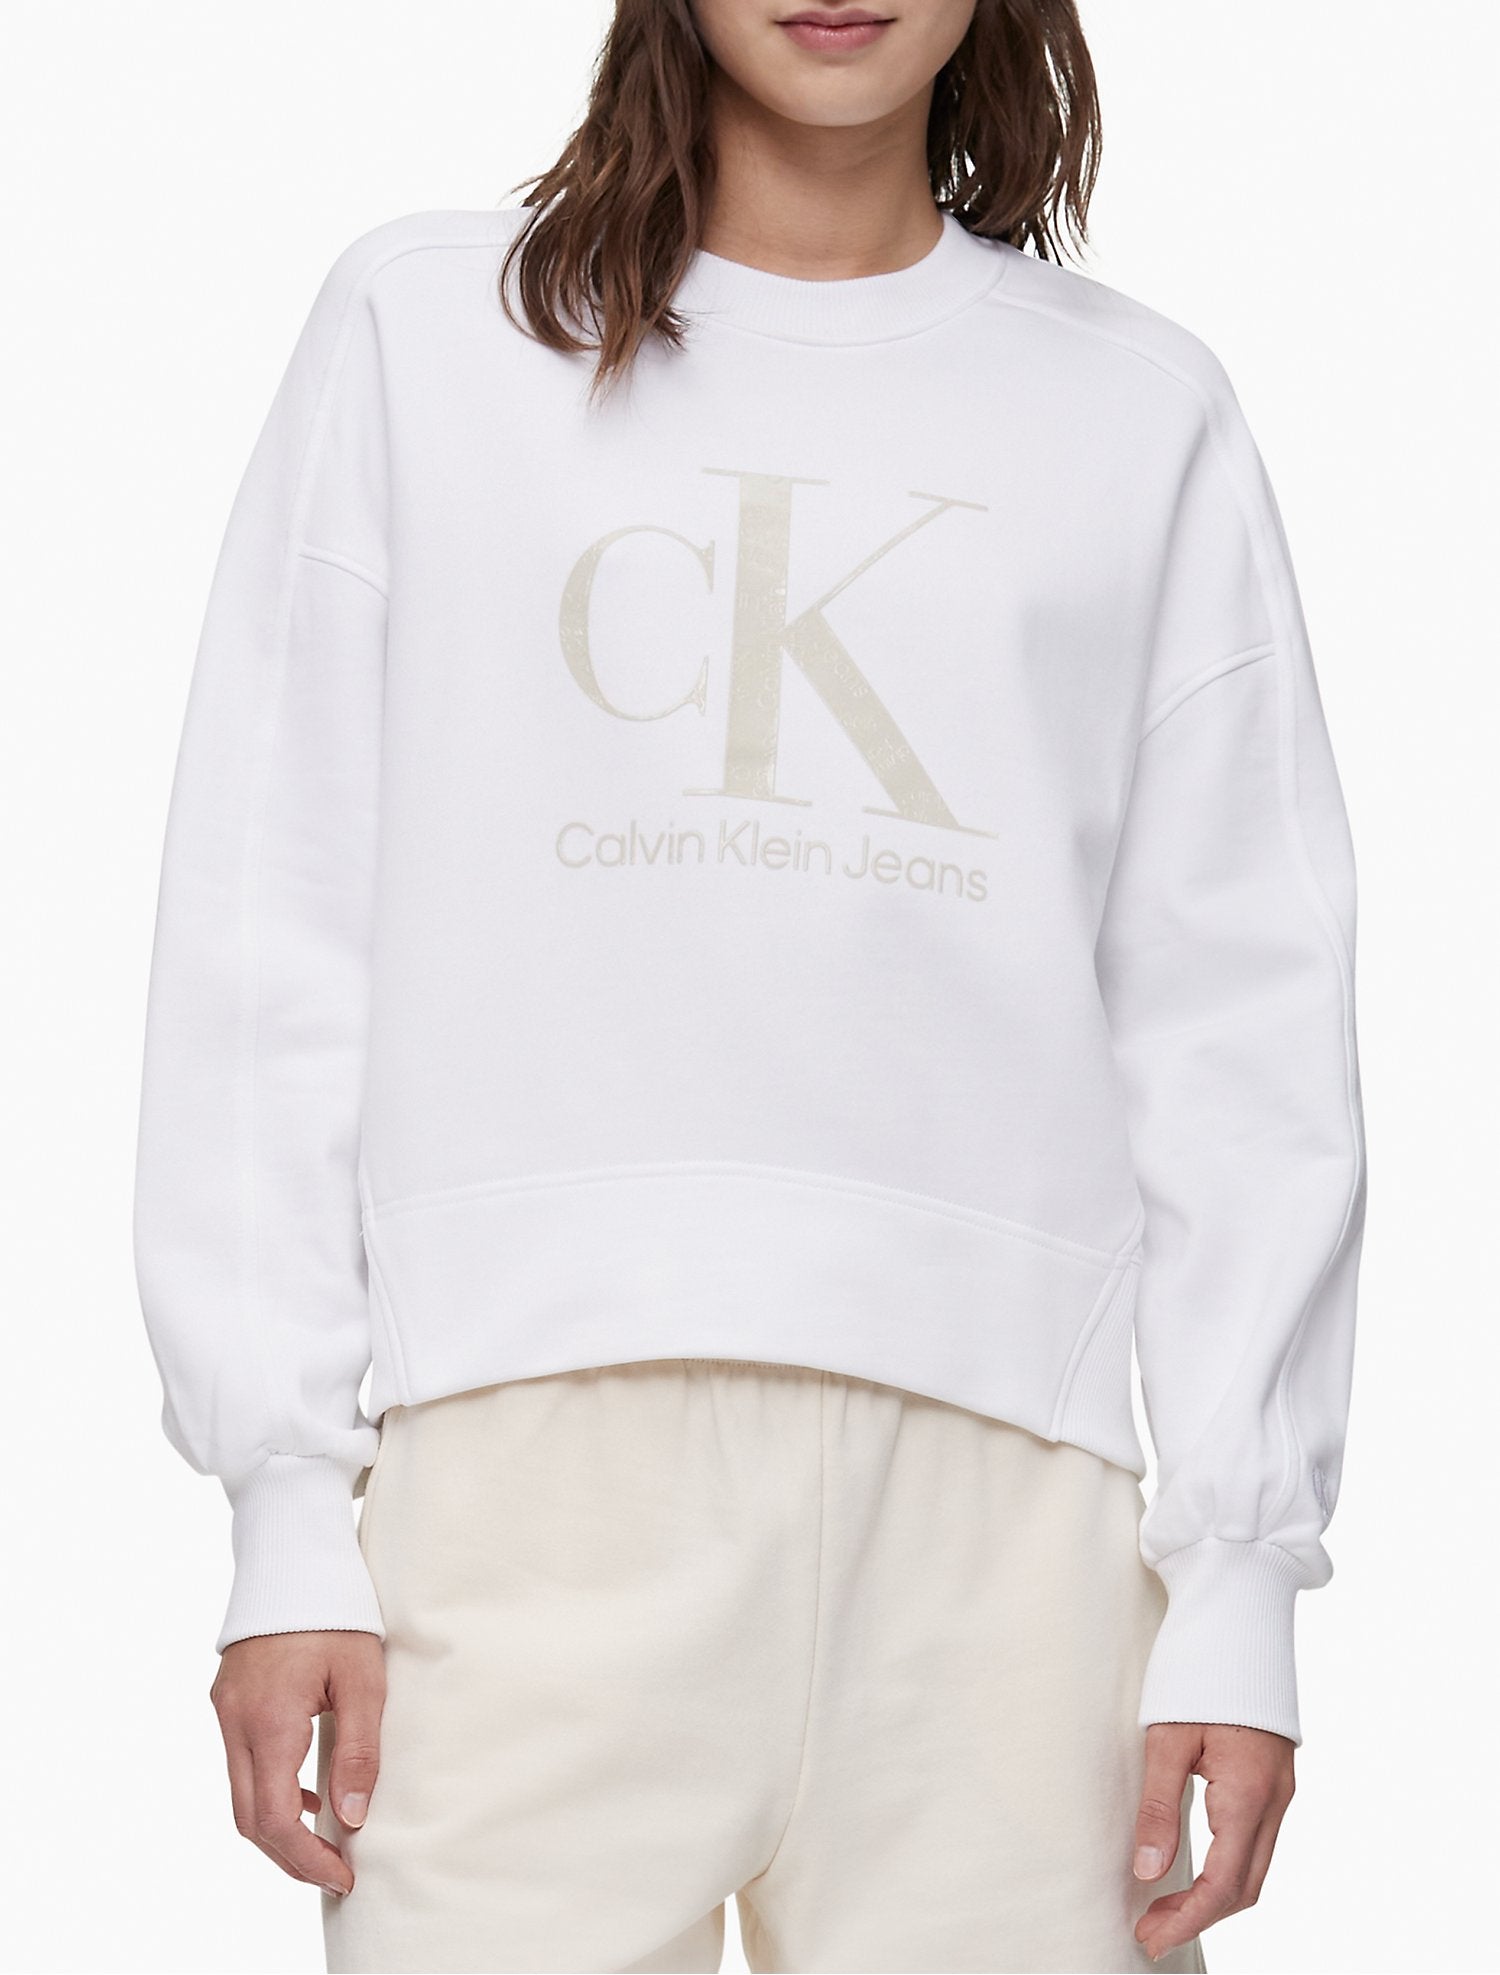 Calvin Klein Women Hoodies + Sweatshirts Bright White- Oshoplin